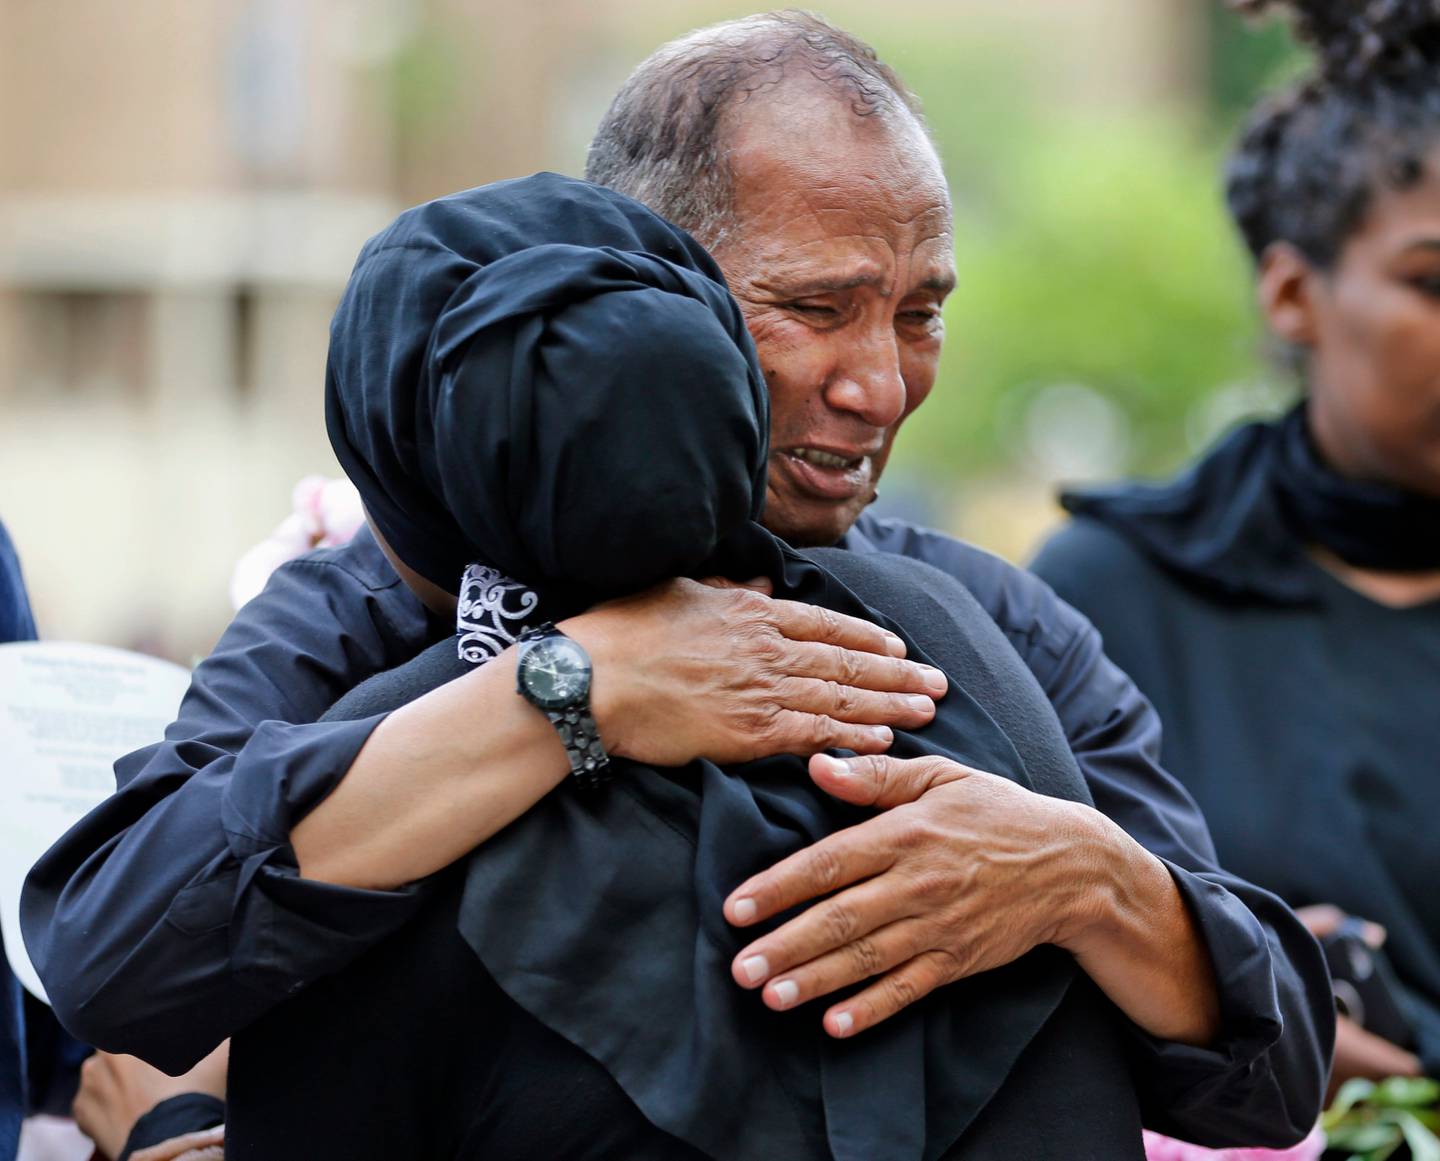 Mahmoud Hassanen Aboras omfavnes før en minnestund for datteren Nabra Hassanen, som ble drept i juni i år. Familien mente Nabra ble utsatt for hatkriminalitet. Foto: Steve Helber/AP/NTB scanpix